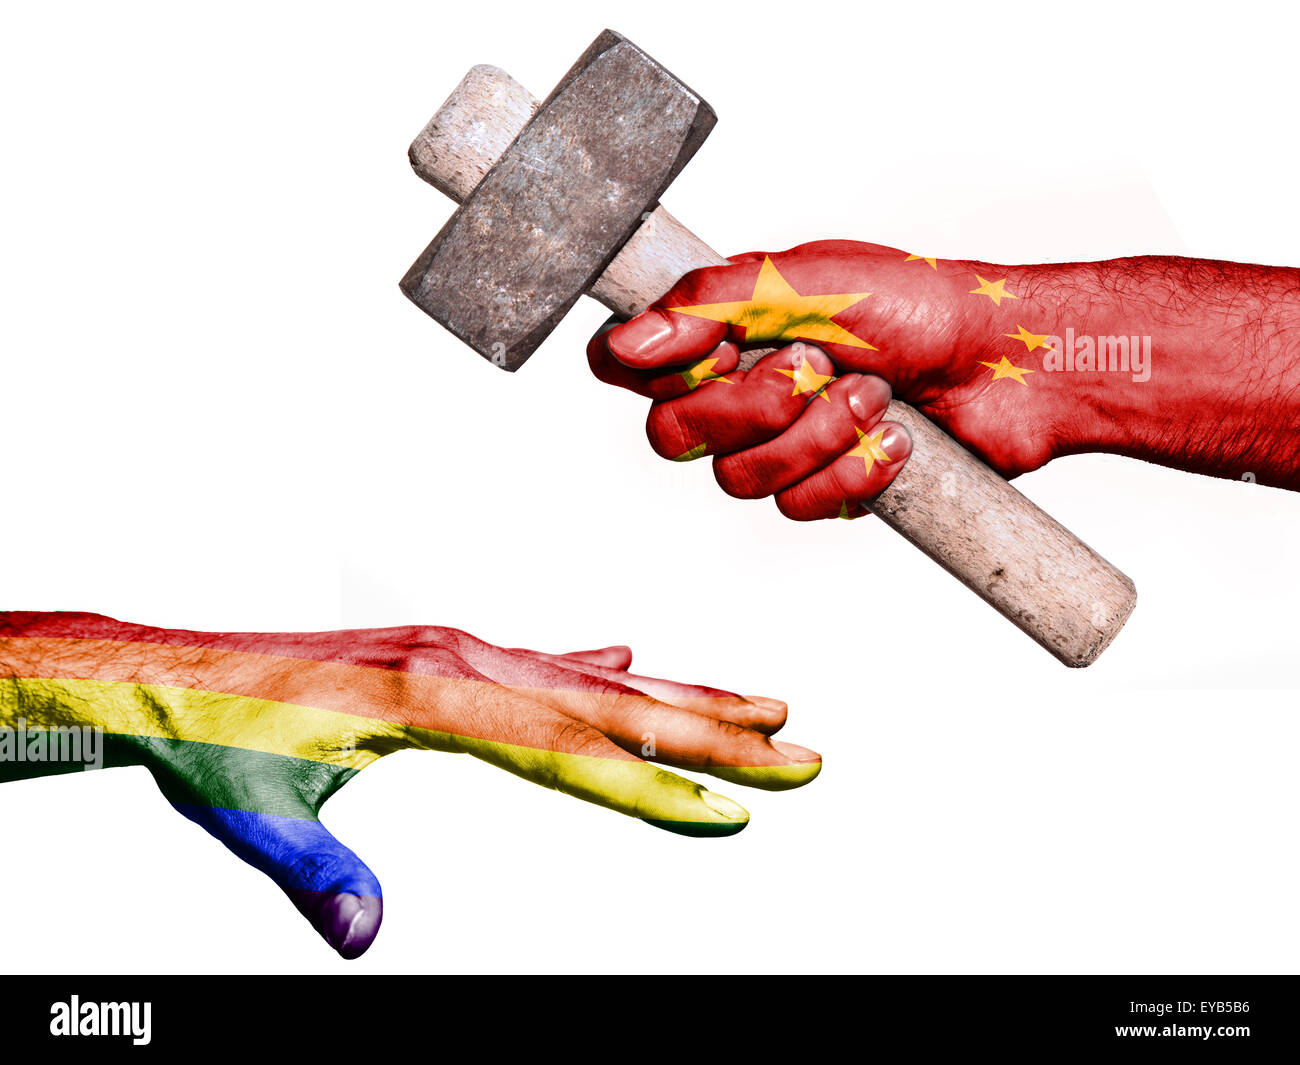 Pabellón de China sobreimpresos en una mano que sostiene un martillo pesado golpea una mano que representa la paz. Imagen conceptual de política Foto de stock